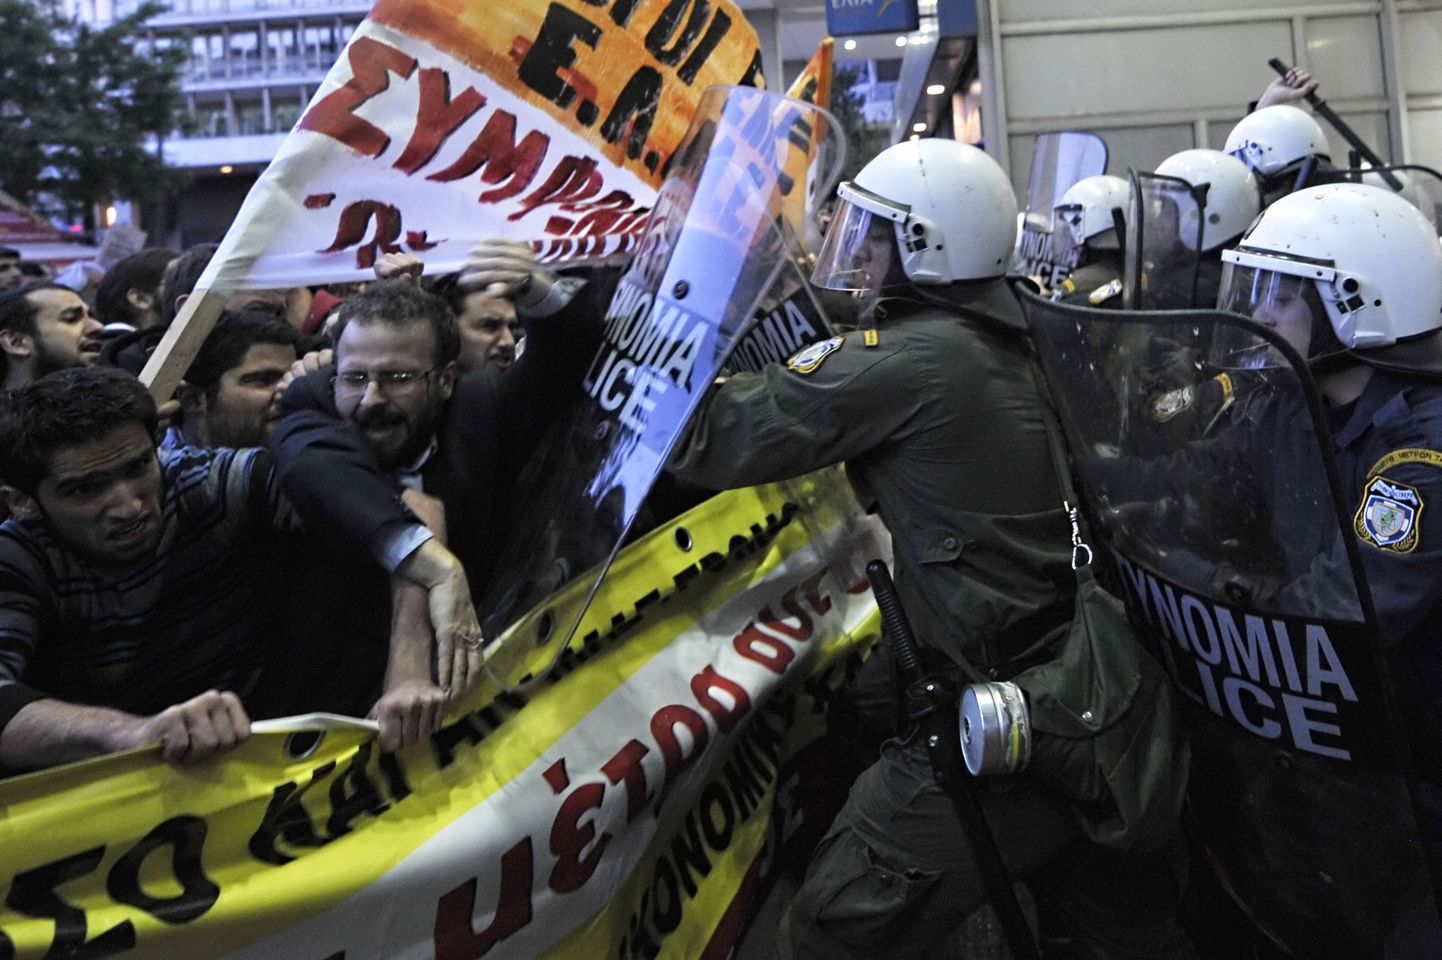 Kreekas on meeleavaldused muutunud igapäevaseks.